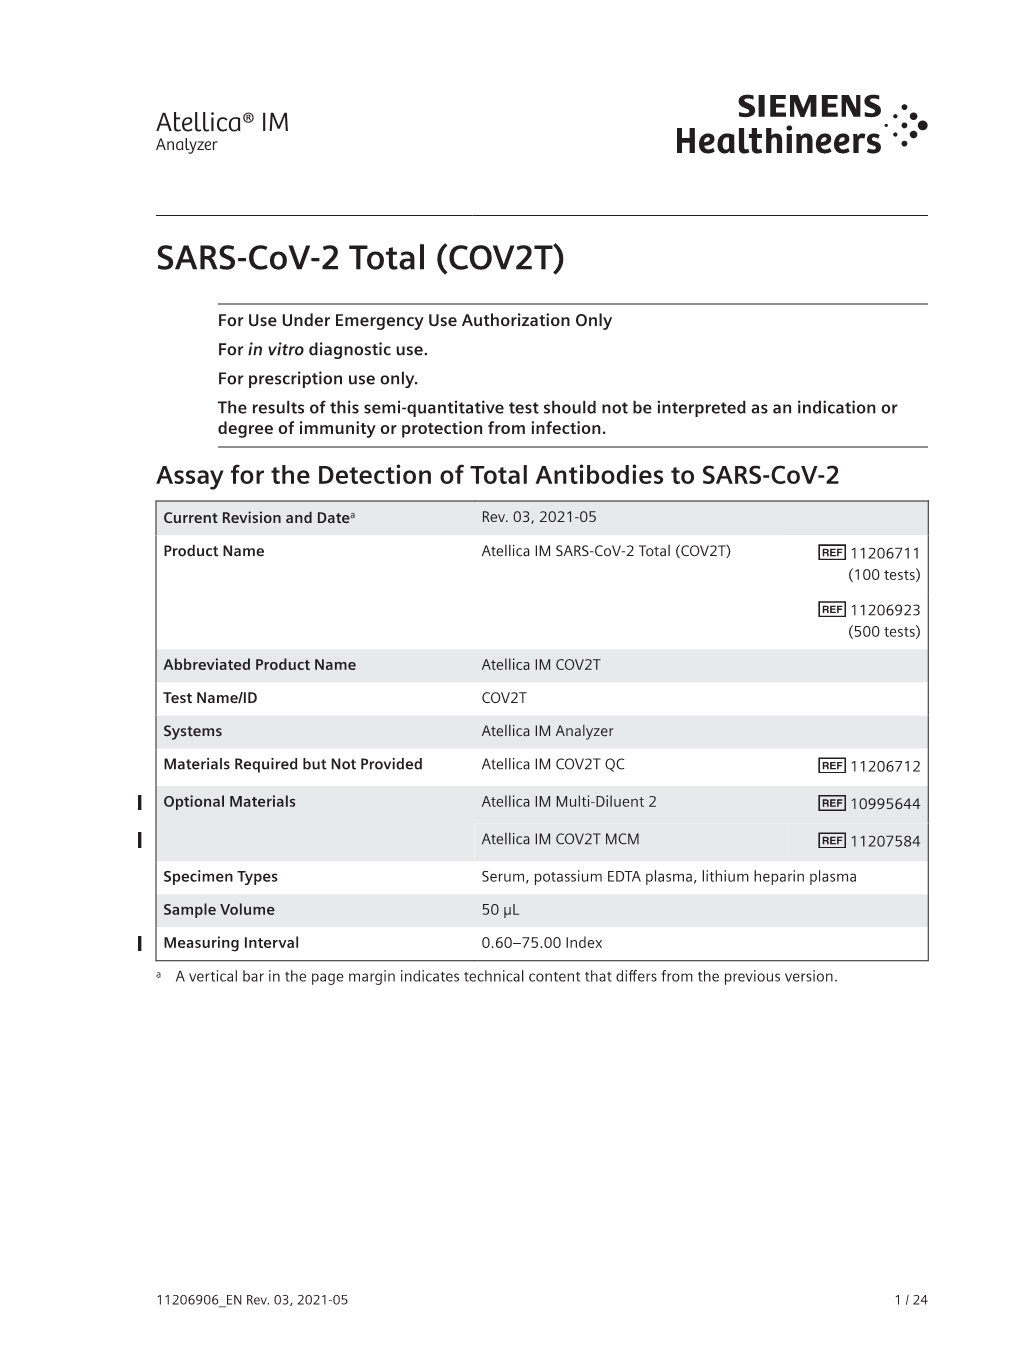 Atellica IM SARS-Cov-2 Total (COV2T) 11206711 (100 Tests)